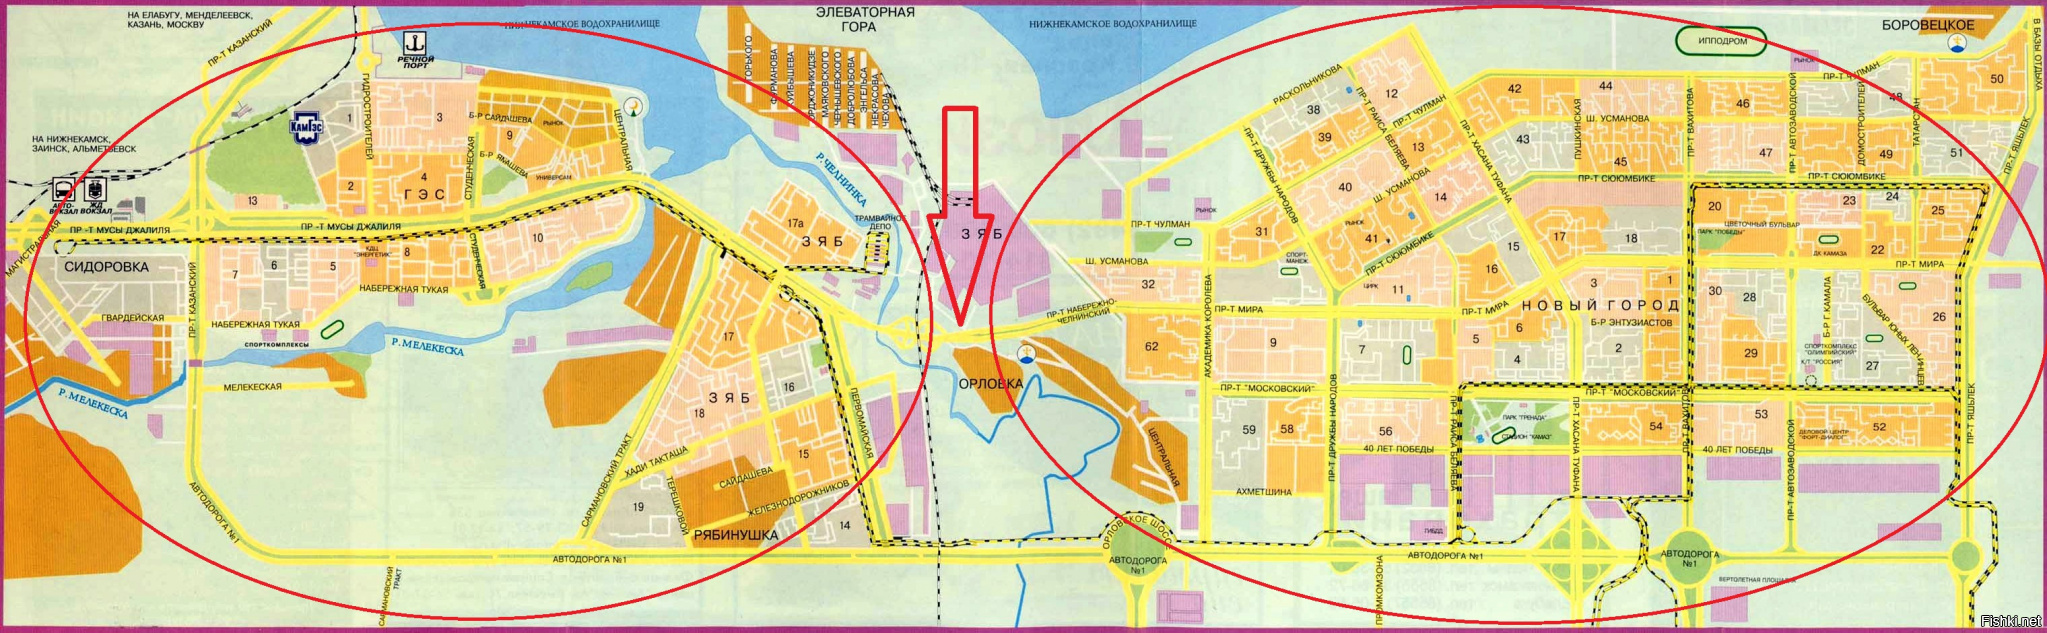 Карта города Набережные Челны